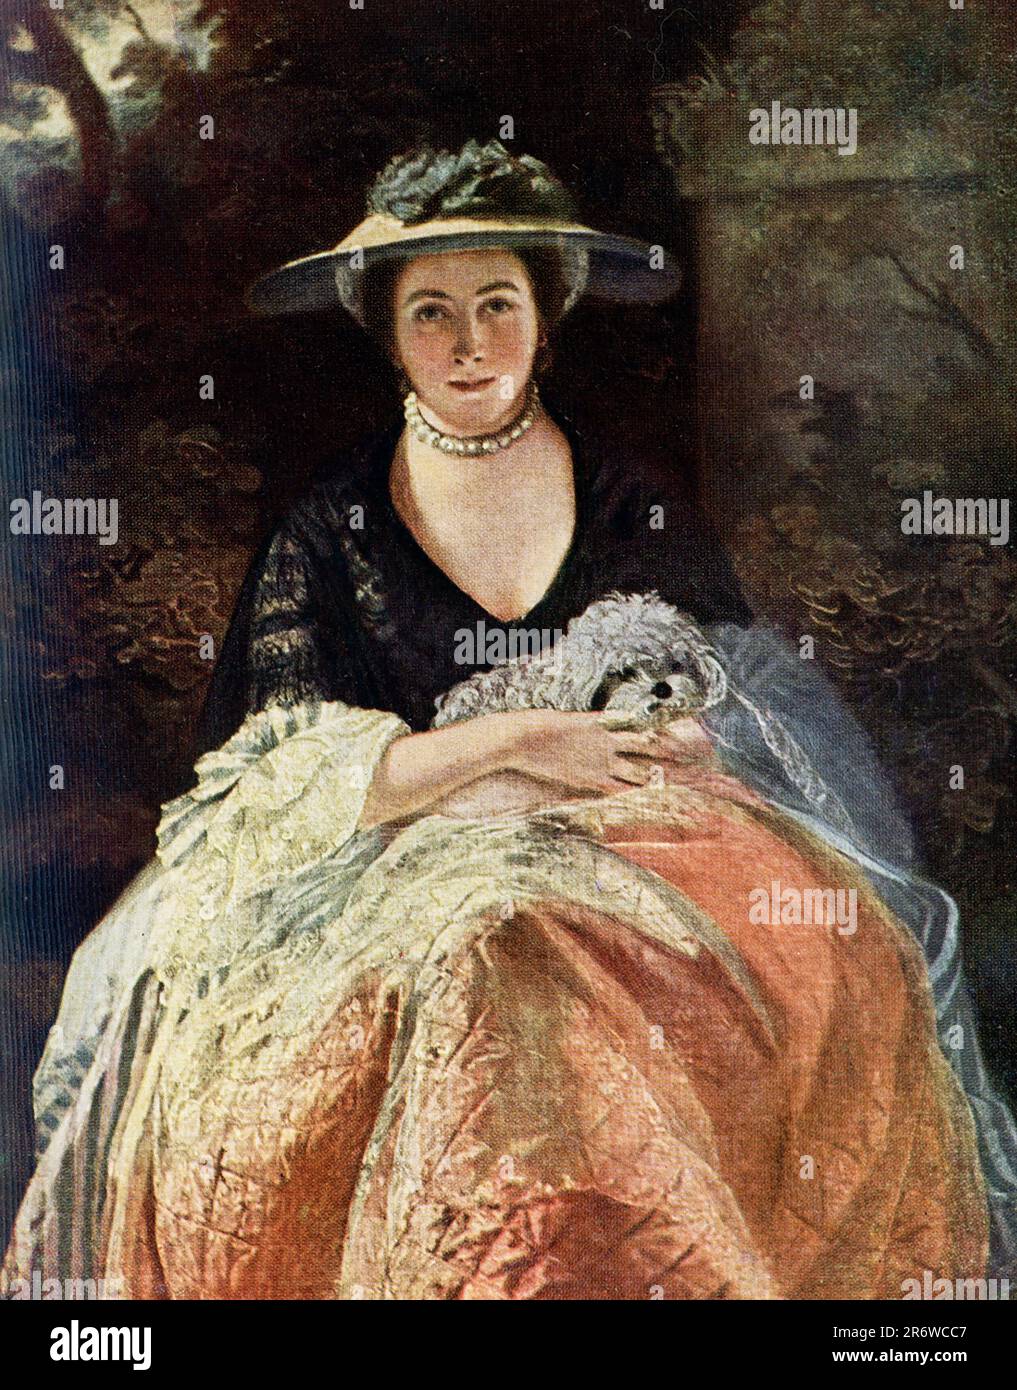 La légende du début de 1900s se lit comme suit : 'Nelly O’Brien de Reynolds (1723-1792) dans la Collection Wallace ce portrait est l'un des meilleurs exemples de l'art de Sir Joshua, et il a été peint en 1763. L'ombre sur le visage est mieux gérée. La dentelle autour du bras et de la jupe sont peintes de la meilleure façon de l’artiste. On se souviendra que Sir Joshua a peint d'autres portraits de cette fascinante femme. Joshua Reynolds (1723-1792) était le principal portraitiste anglais du 18th siècle. Par l'étude de l'art de la Renaissance antique et italienne, et de l'œuvre de Rembrandt, Rubens et Van Dyck, il bro Banque D'Images